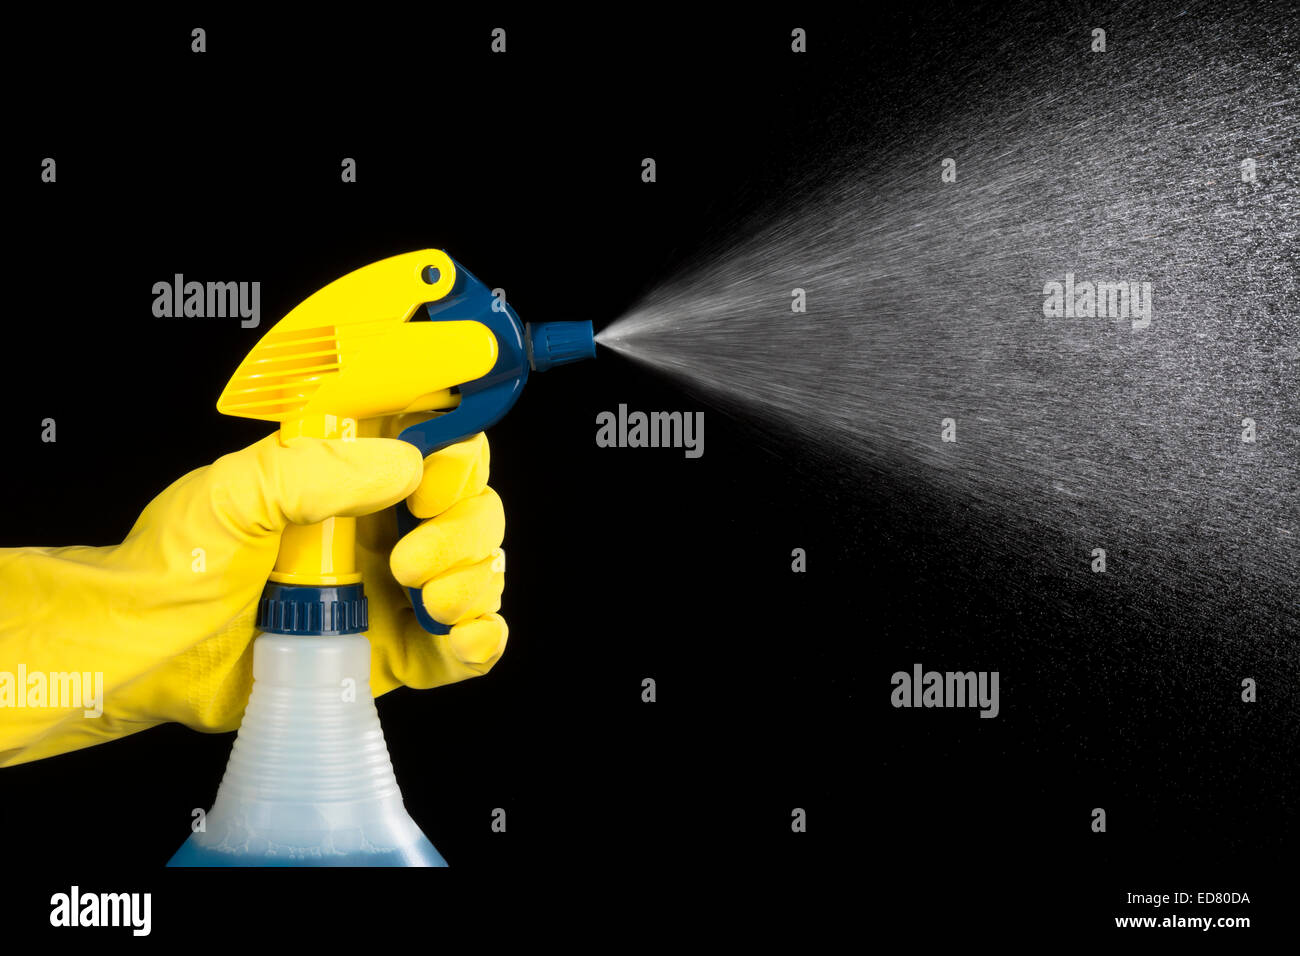 Una persona usa un pulverizador de bomba de mano y guante de protección para pulverizar productos químicos de limpieza. Foto de stock